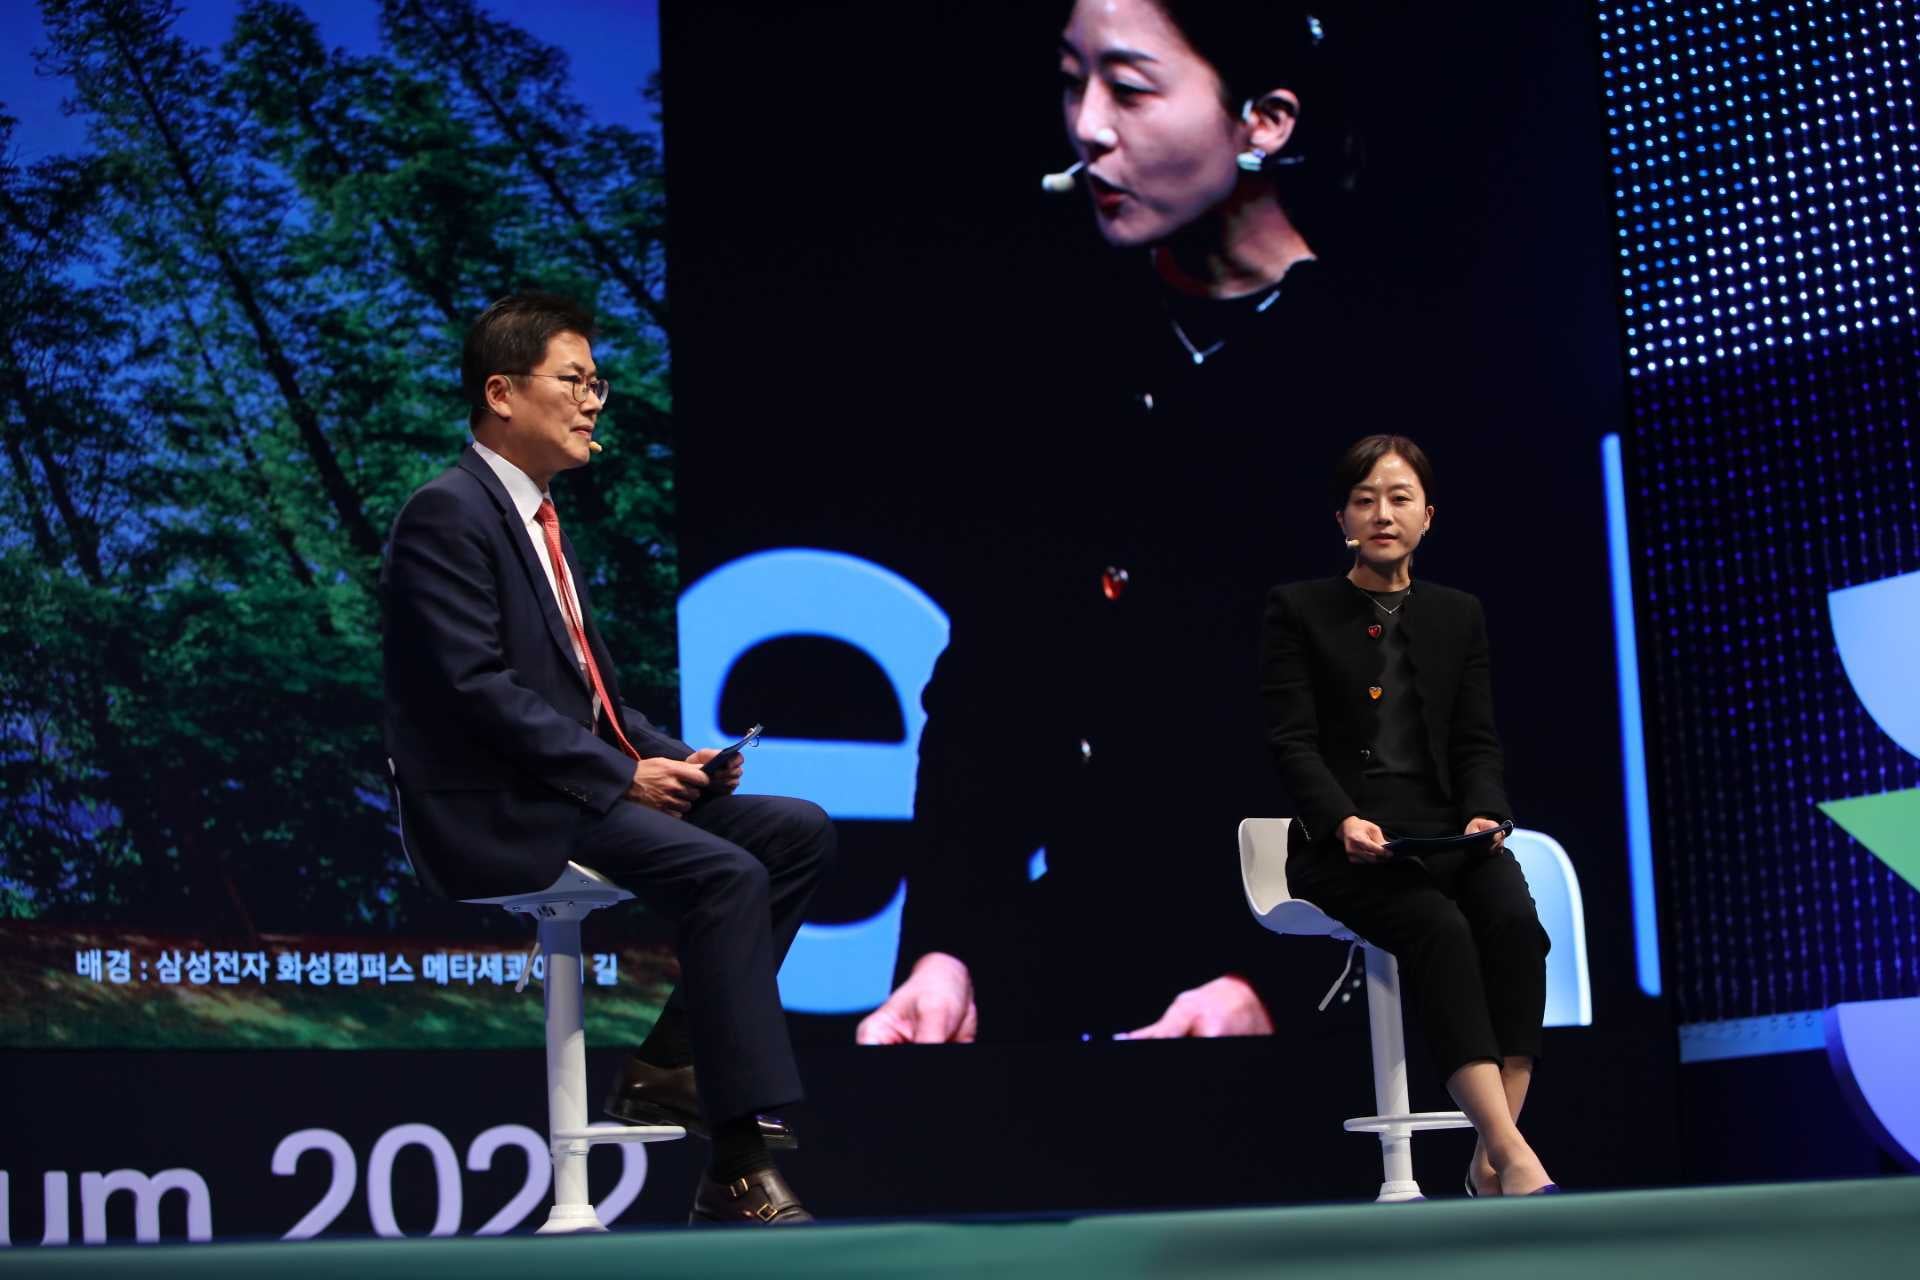 三星电子 DS 企业可持续发展副总裁 HyunJung Seo（Seo，在做主题演讲。）